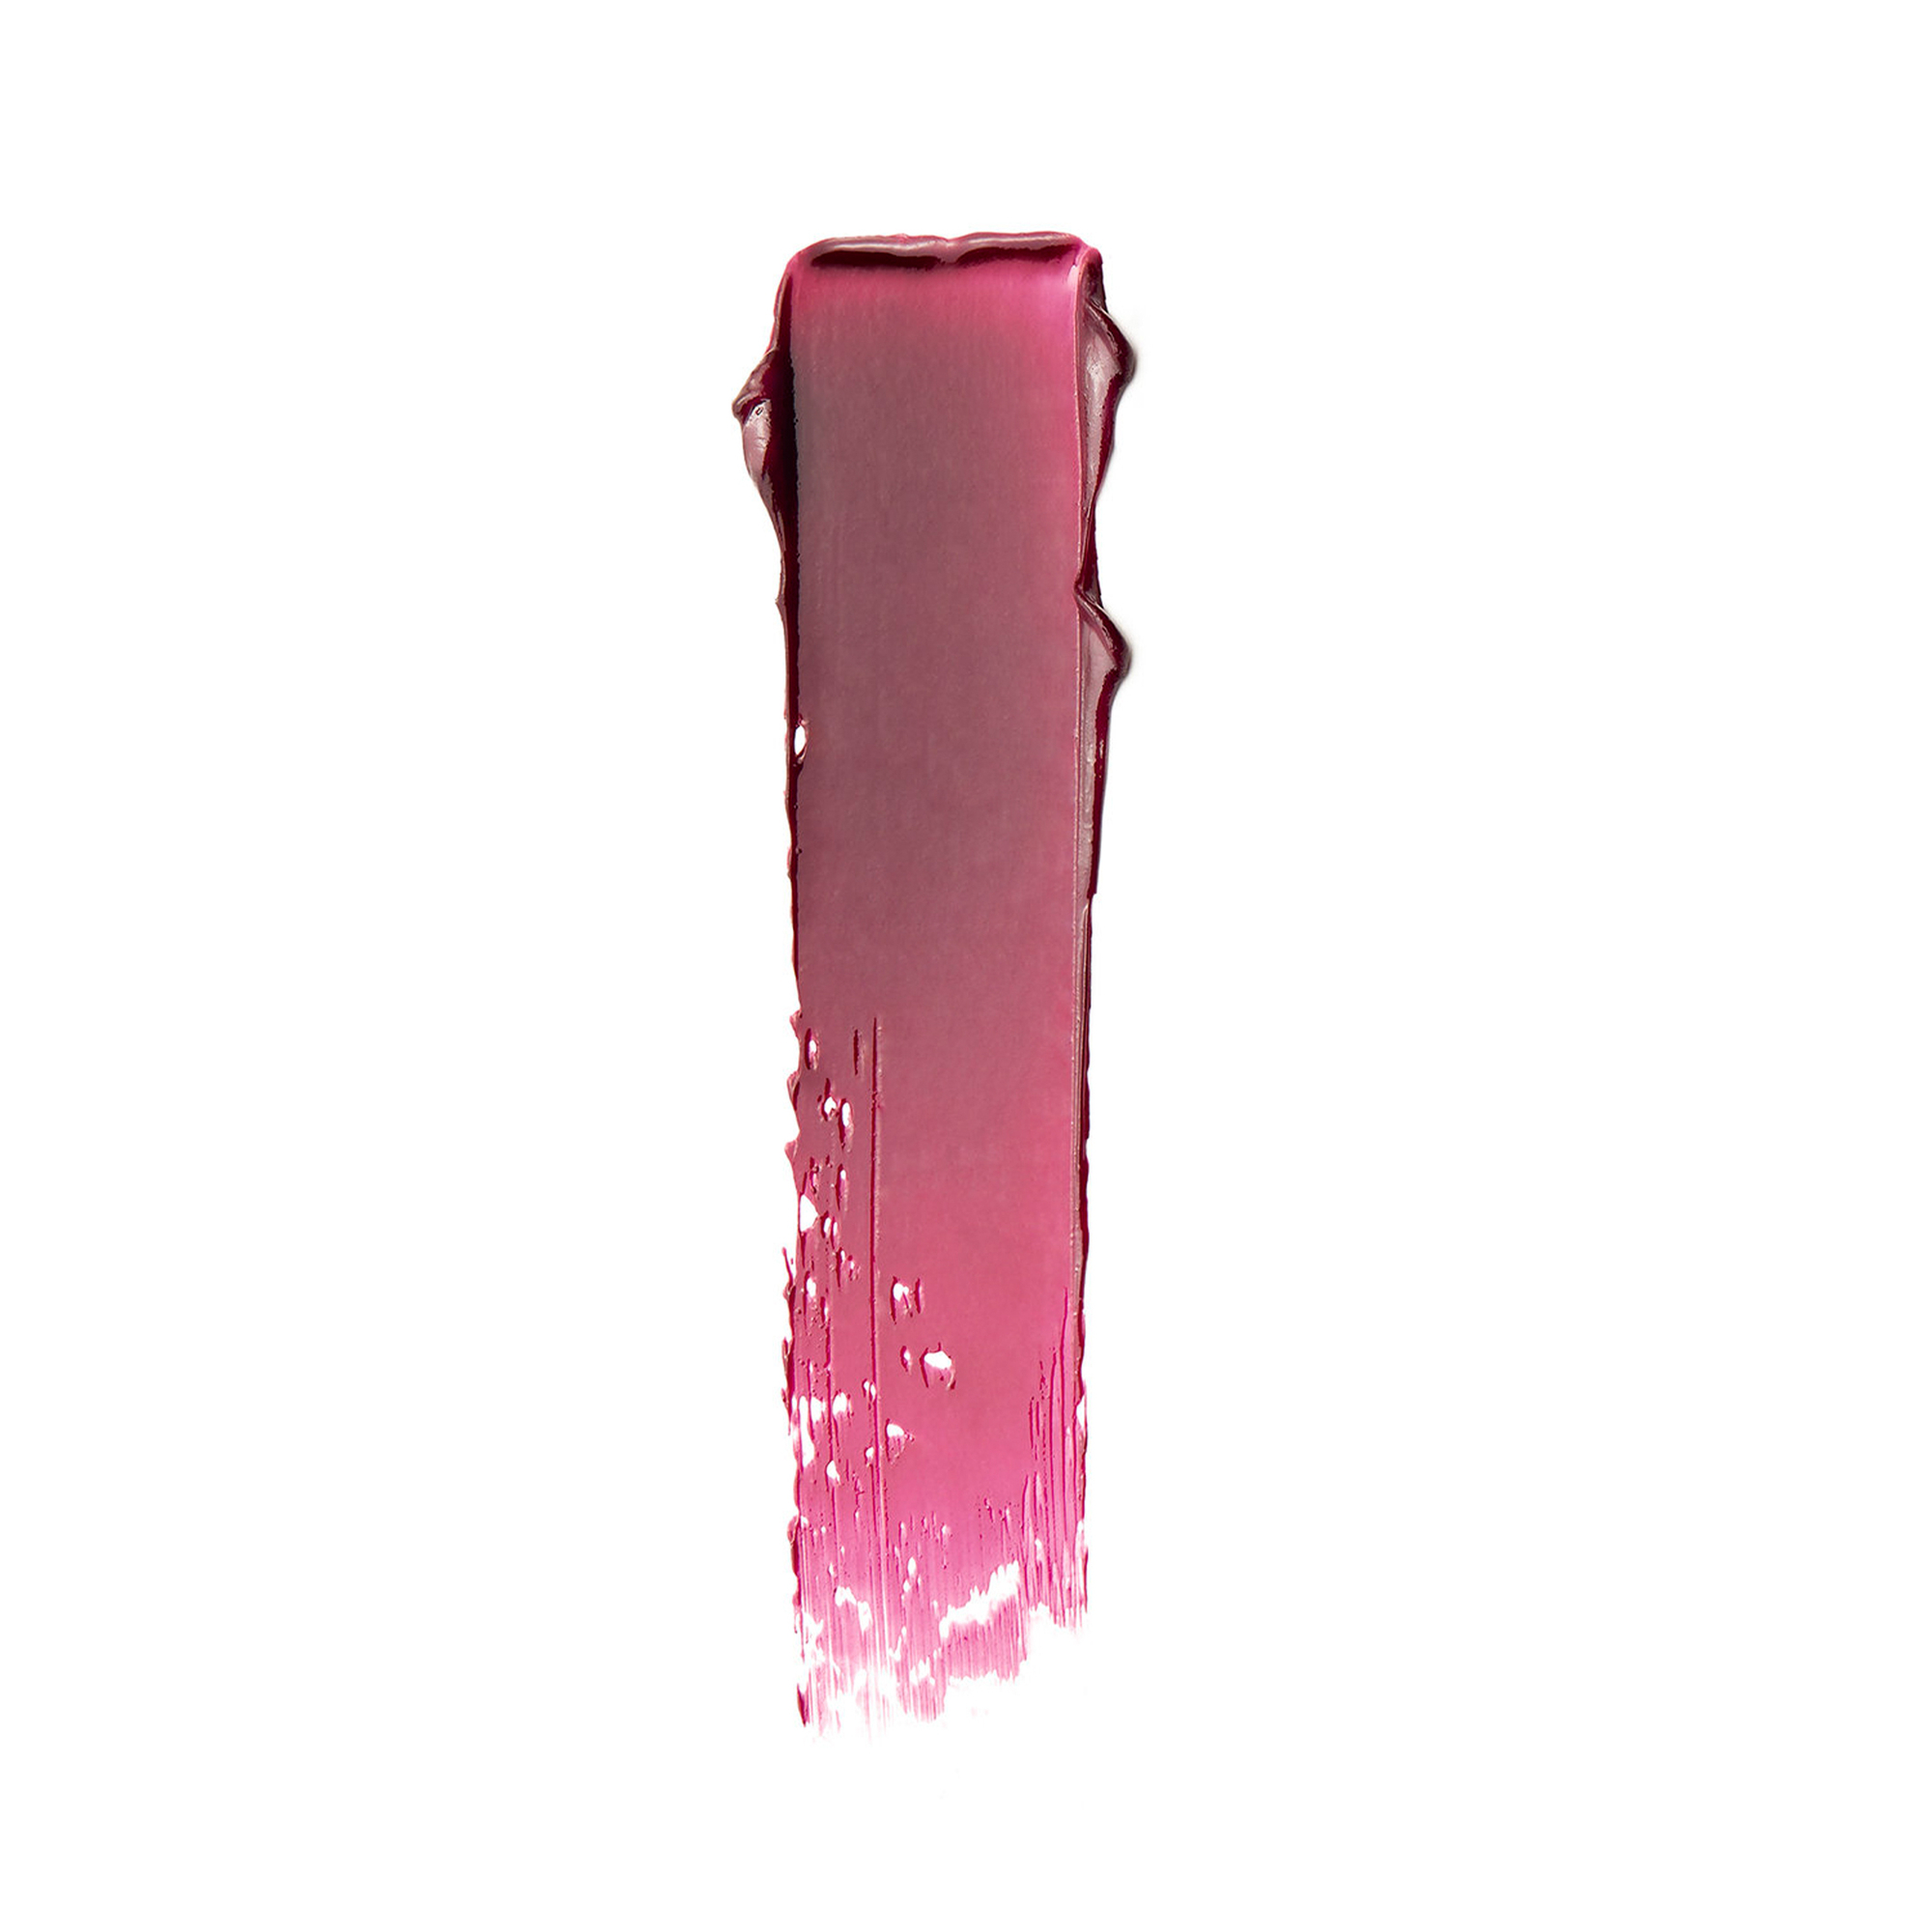 Balmyard Beauty - Rúzs- és pirosító balzsam